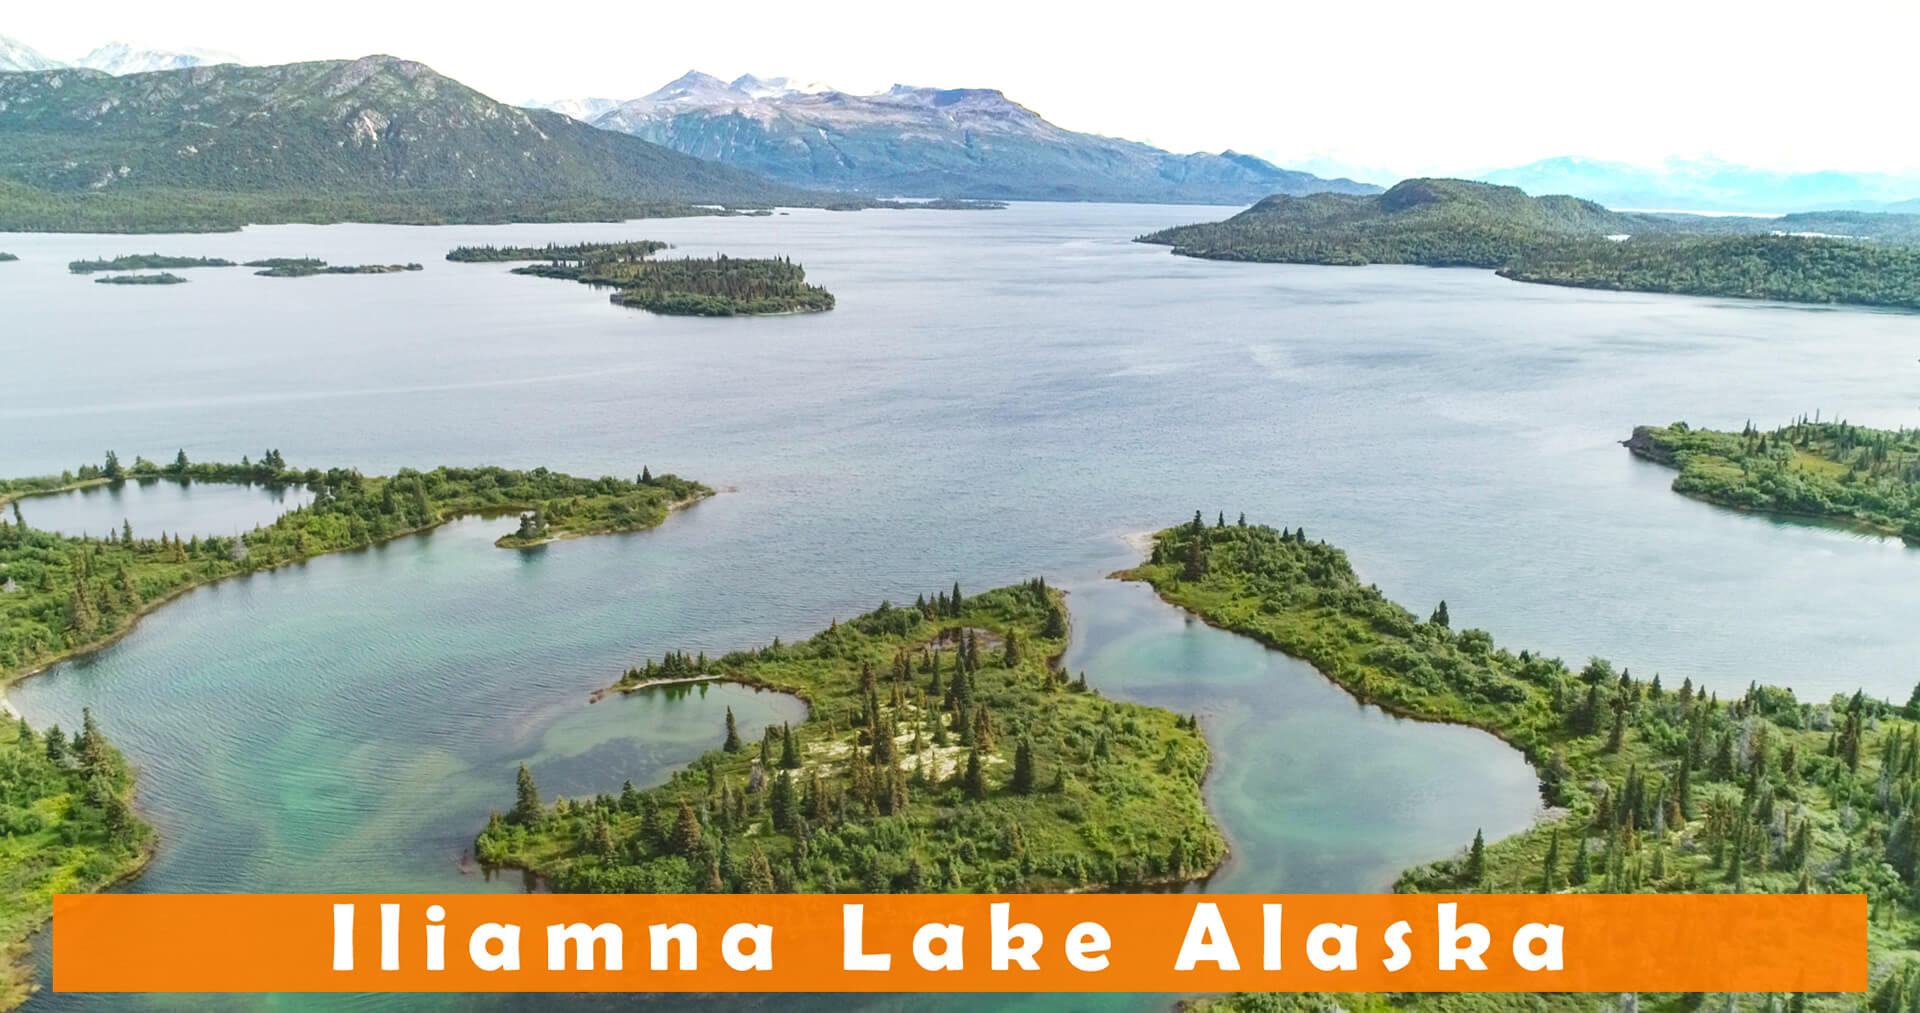 Iliamna Lake Alaska